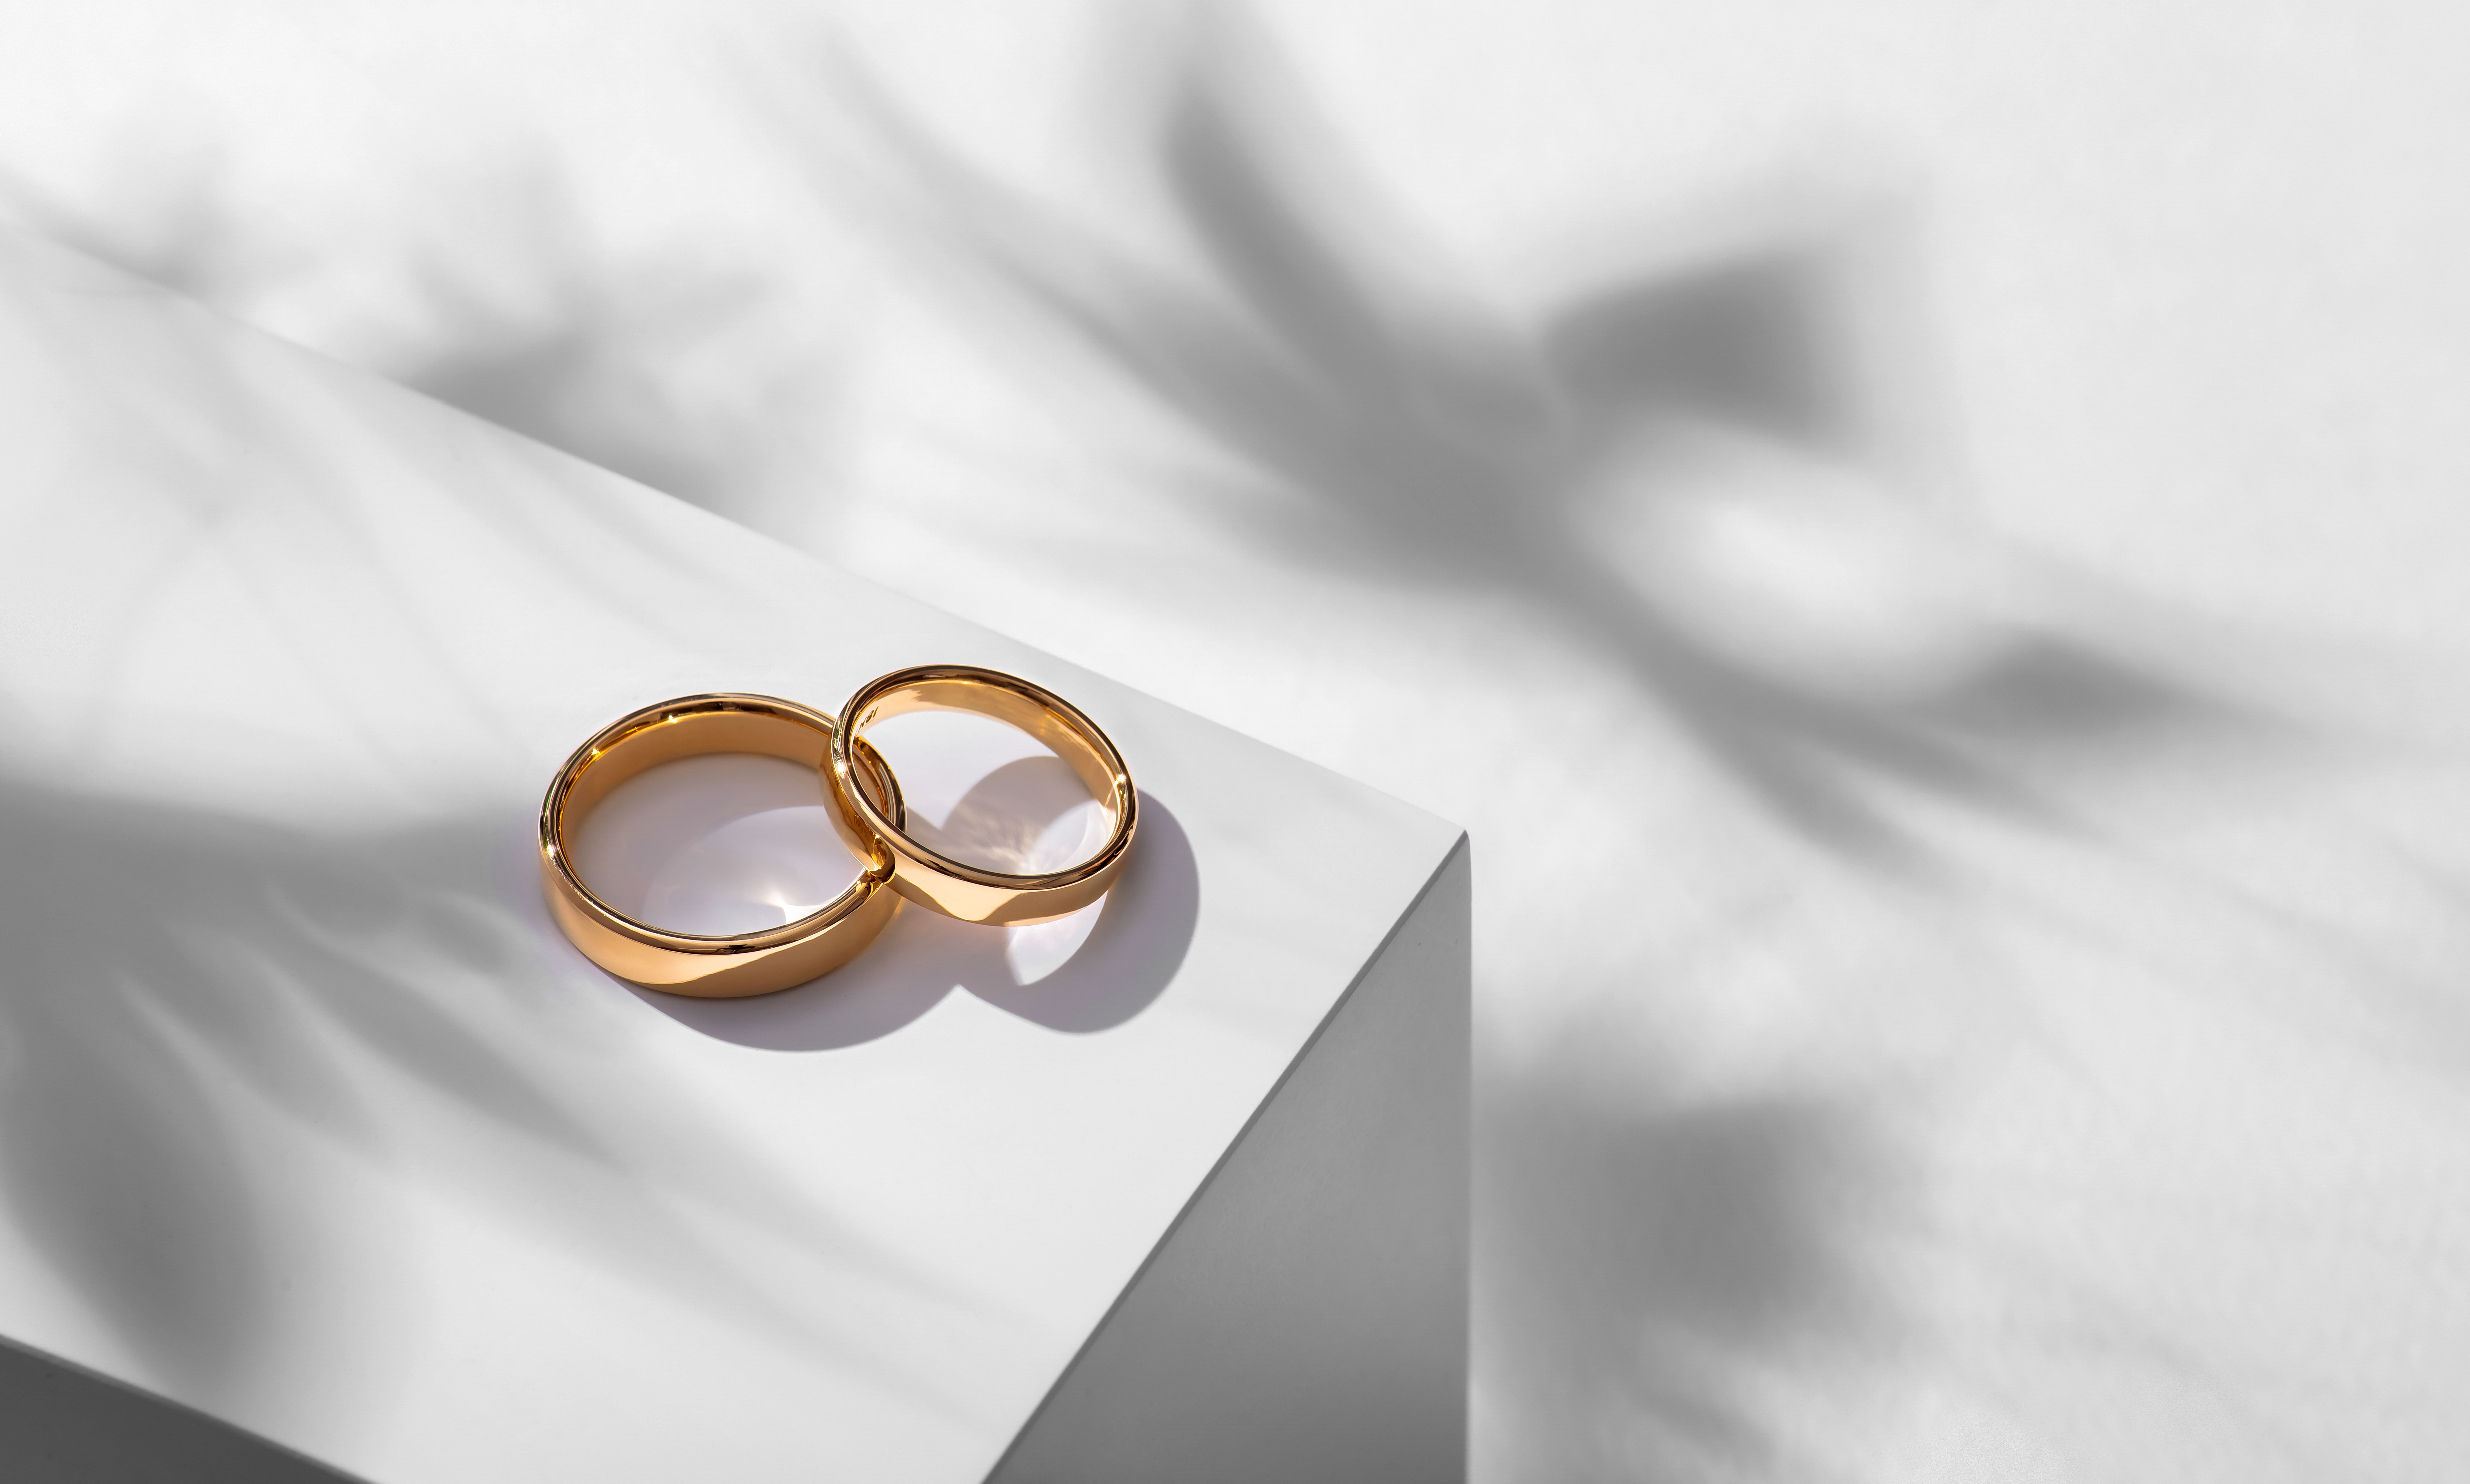 Zwei goldene Eheringe auf weißem Hintergrund | Quelle: Shutterstock